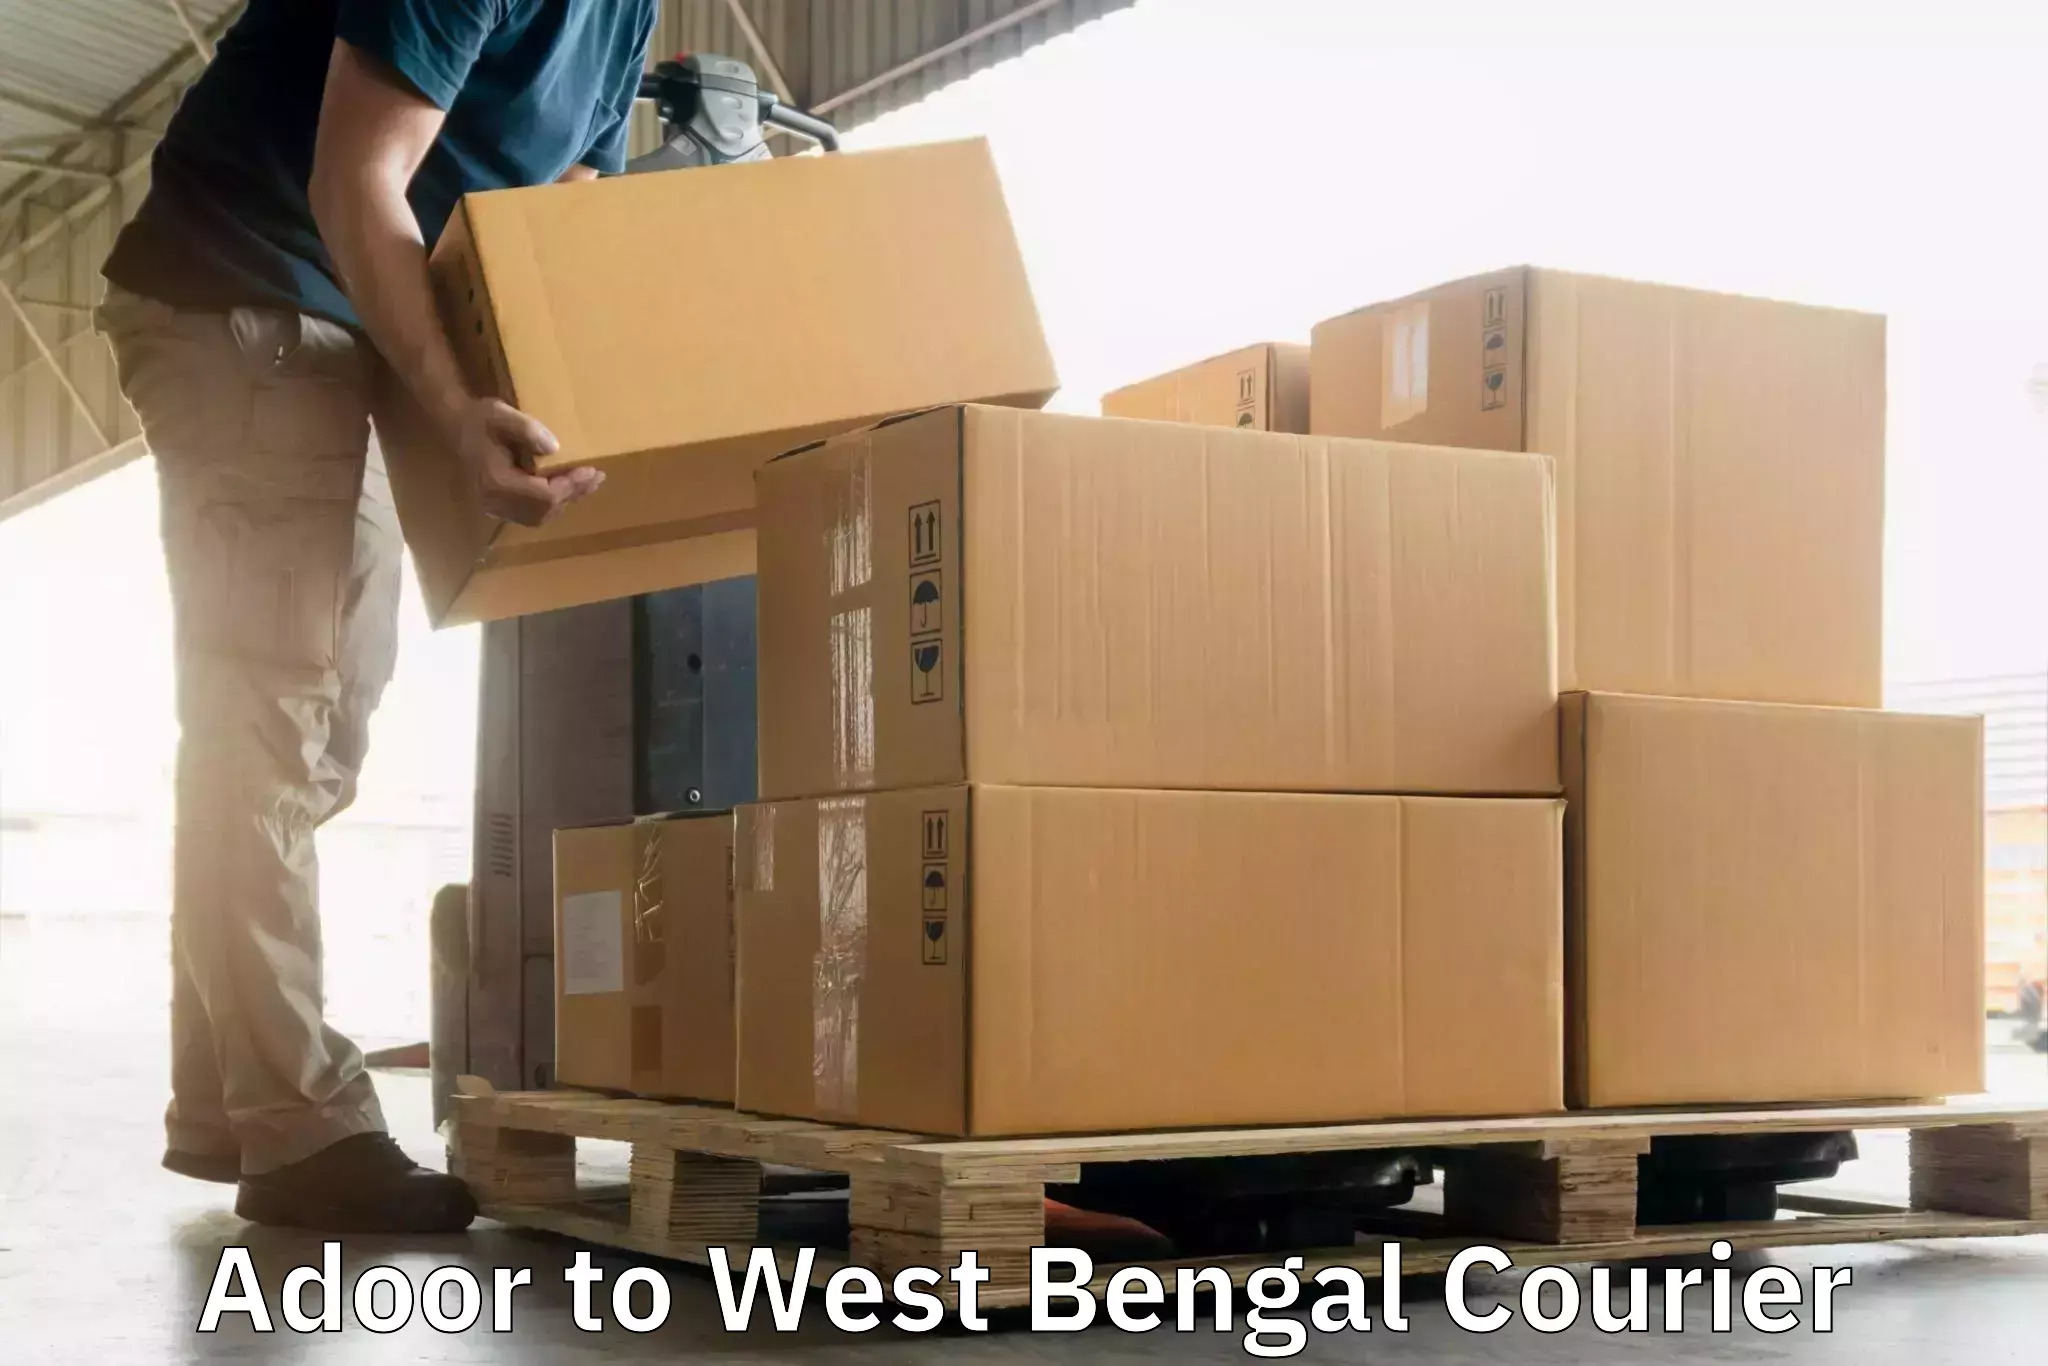 Ocean freight courier Adoor to West Bengal